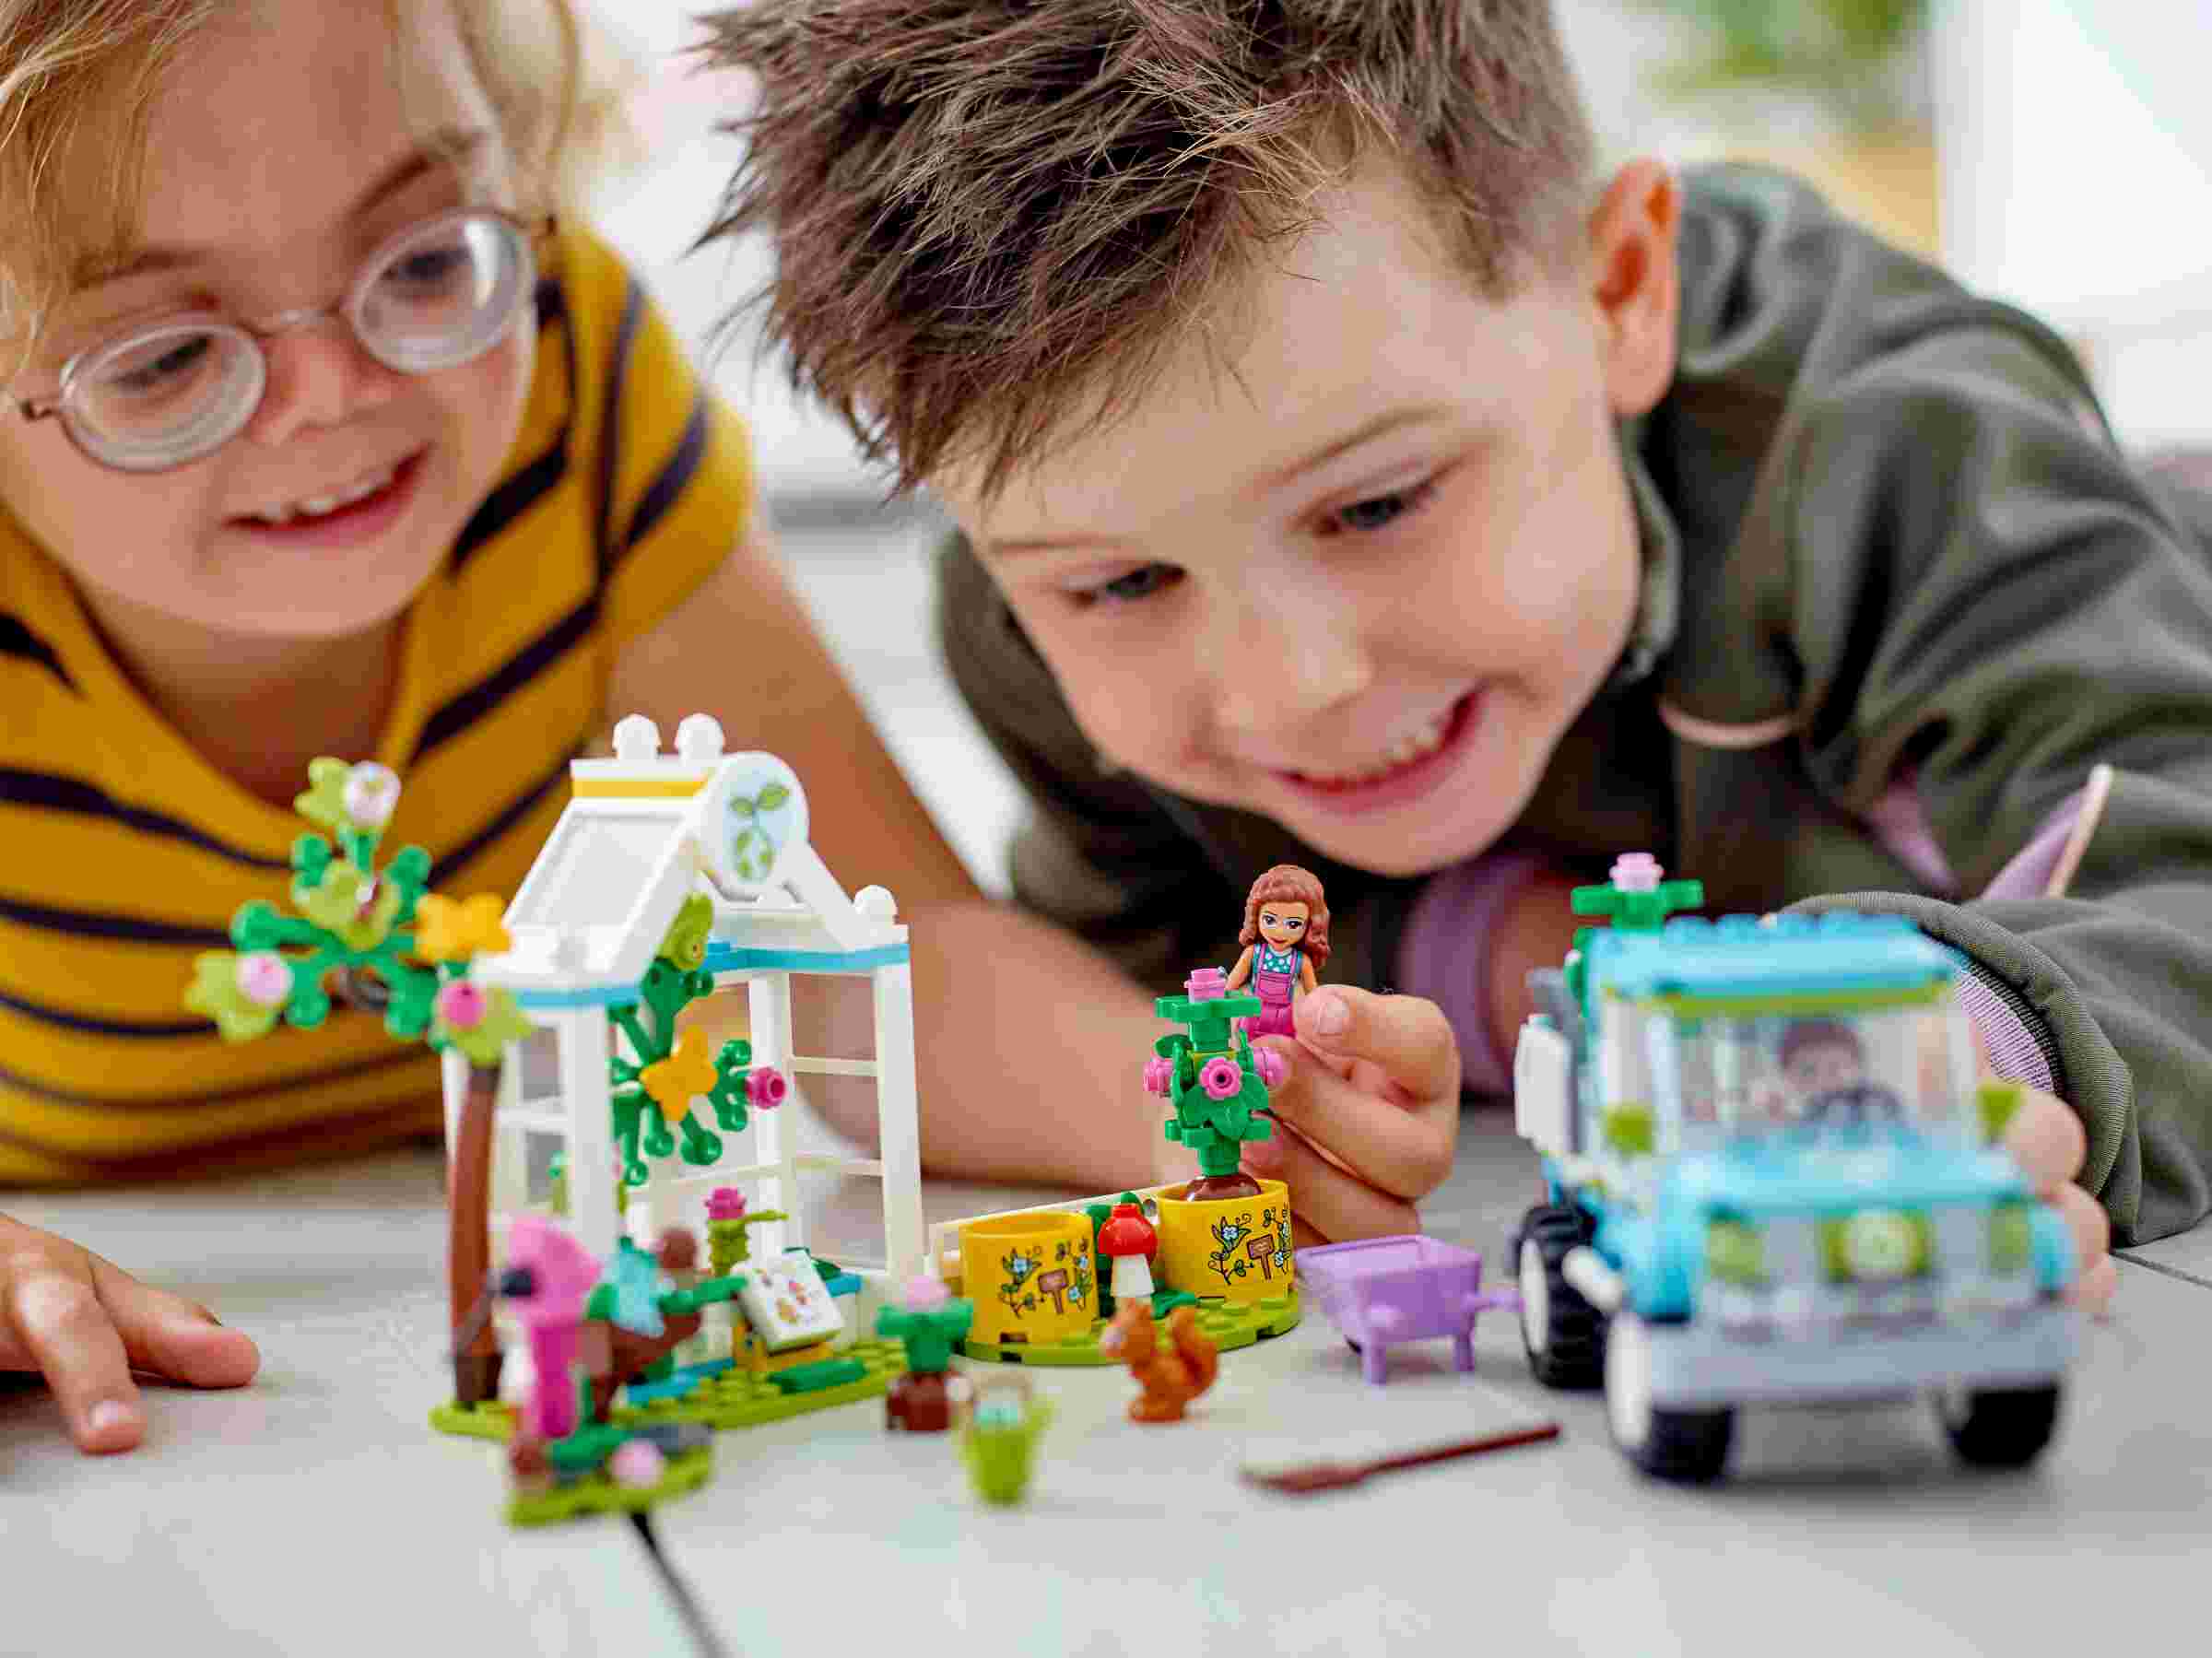 LEGO 41707 Friends Baumpflanzungsfahrzeug, Blumengarten-Spielzeug ab 6 Jahren